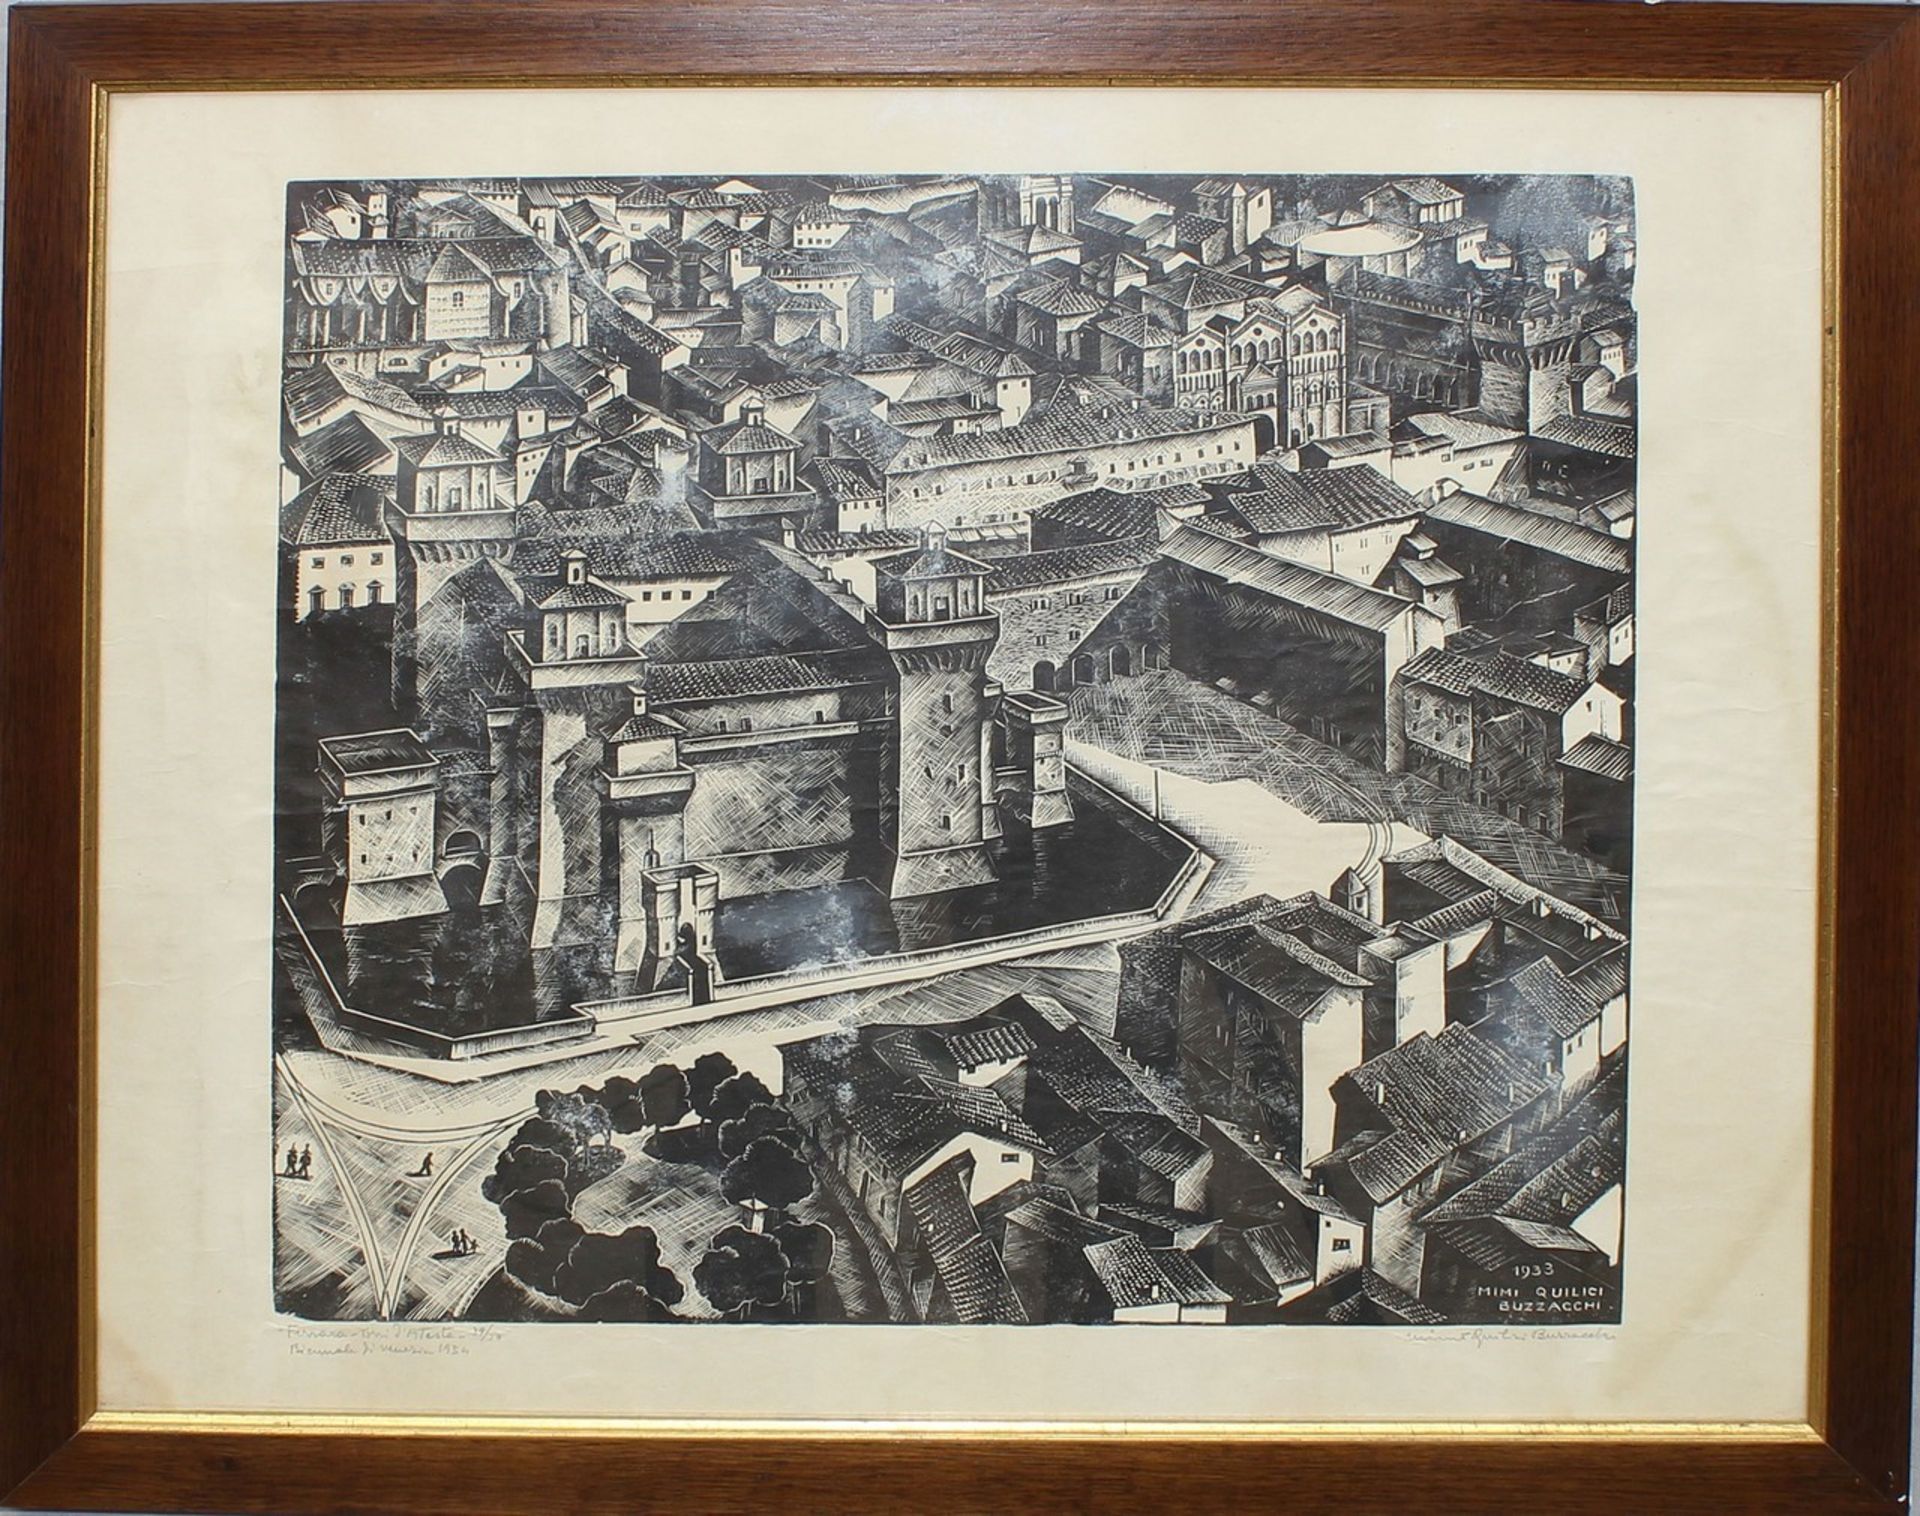 Litografia, Mimi Quilici Buzzacchi 1933, Biennale di Venezia 1934 n. 39/50